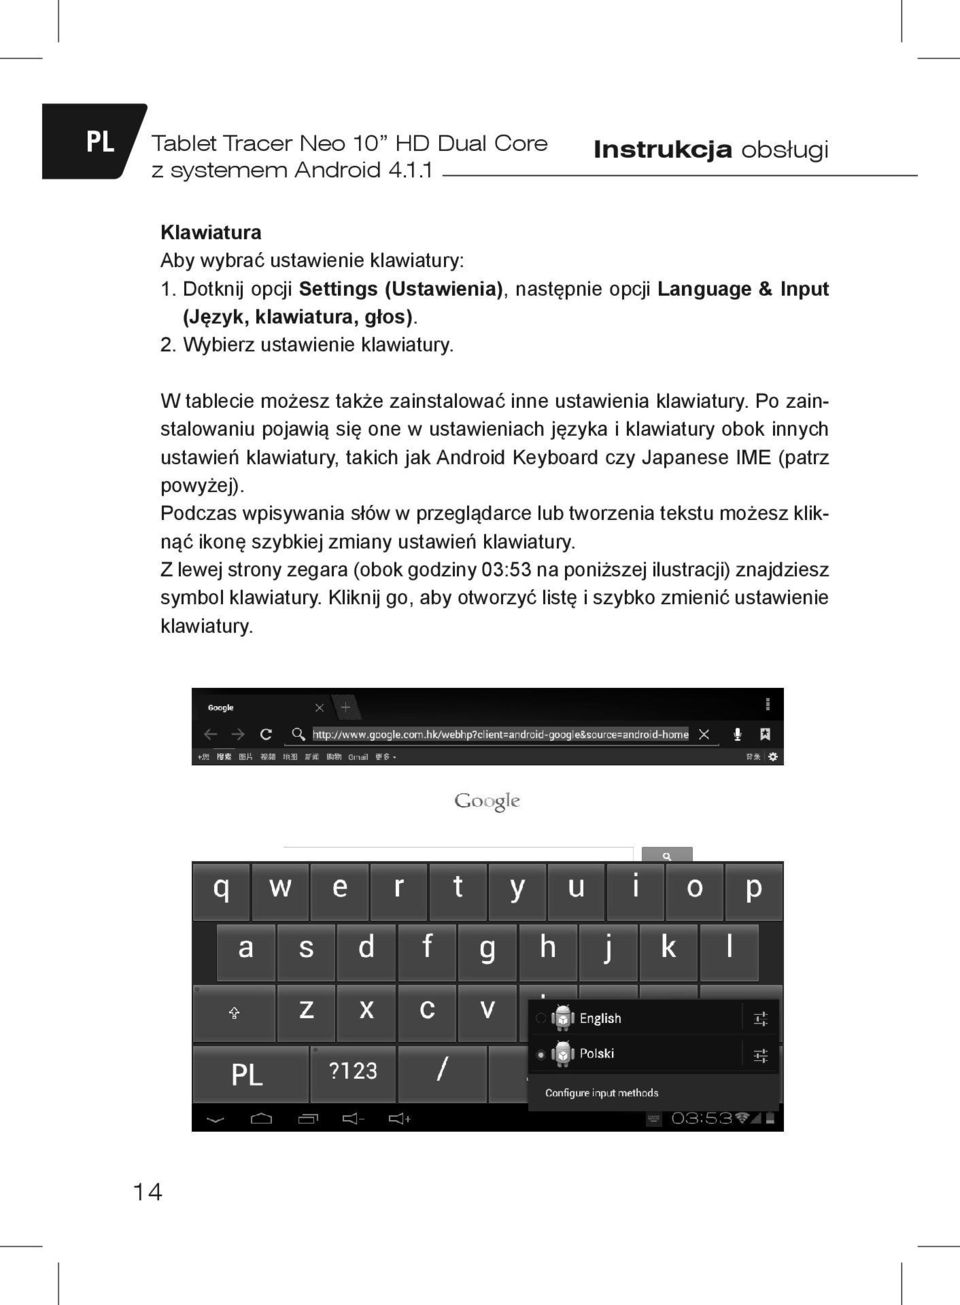 Po zainstalowaniu pojawią się one w ustawieniach języka i klawiatury obok innych ustawień klawiatury, takich jak Android Keyboard czy Japanese IME (patrz powyżej).